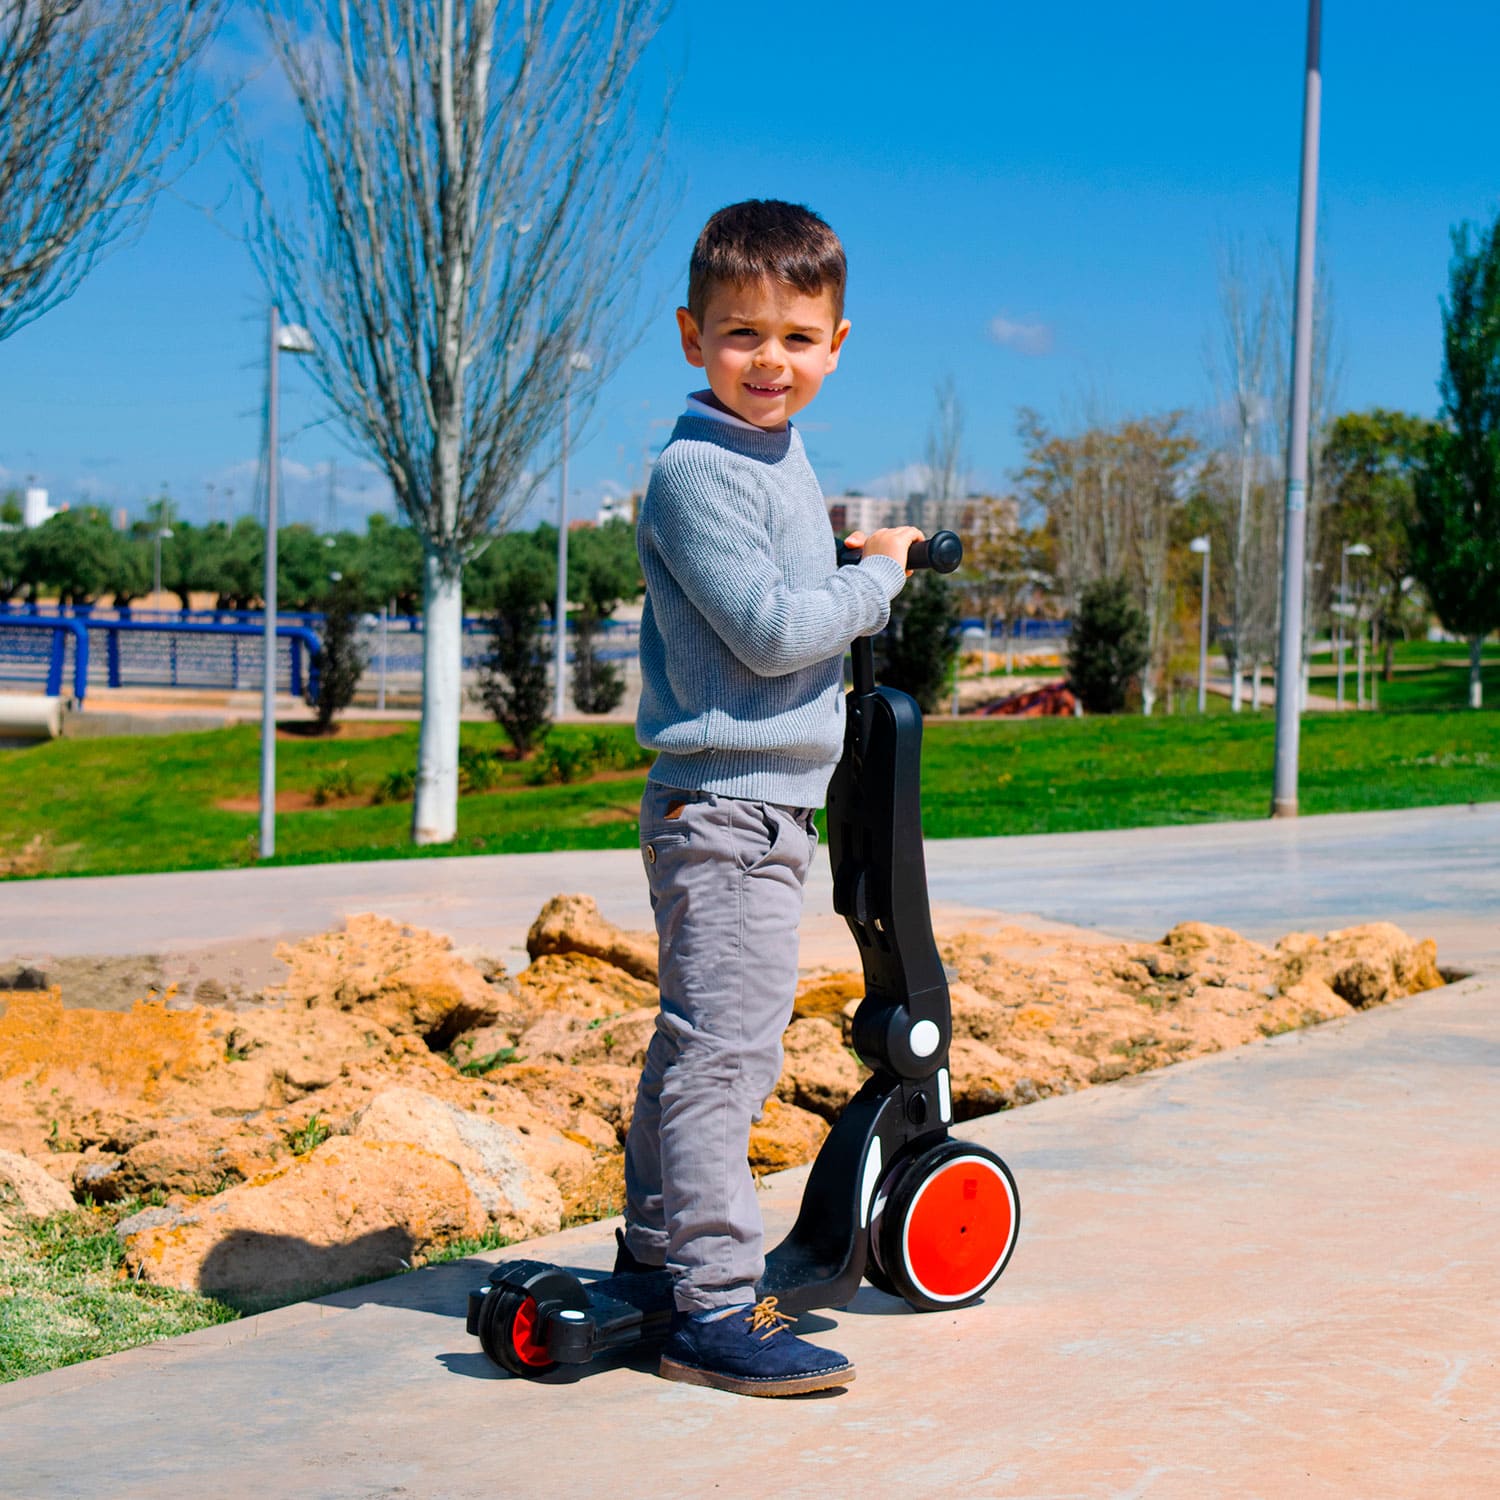 Niño en el triciclo-patinete Ride and roll en modo patinete